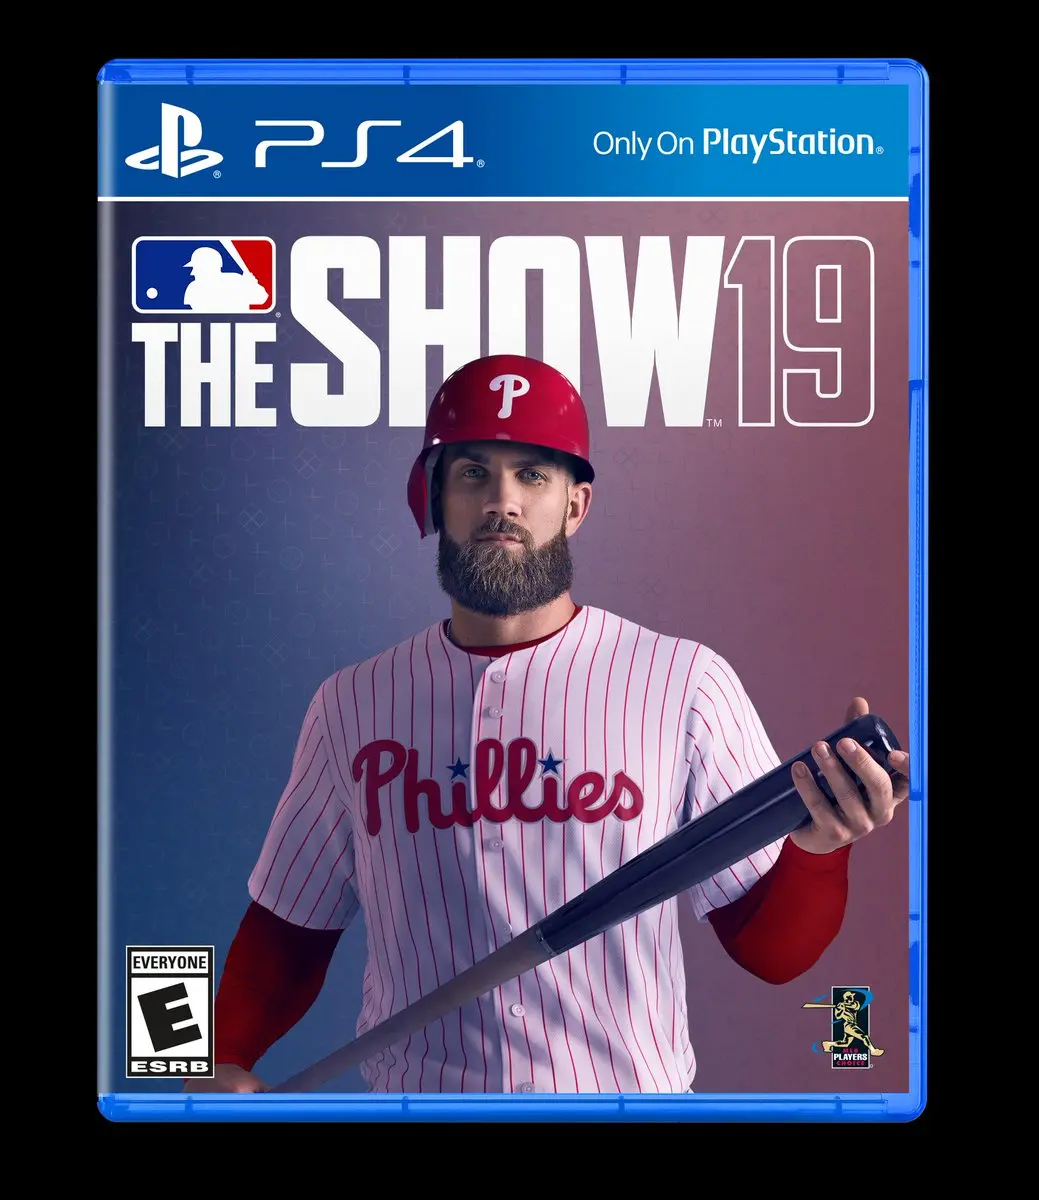 Capa do MLB The Show com Bryce Harper usando uniforme dos Phillies